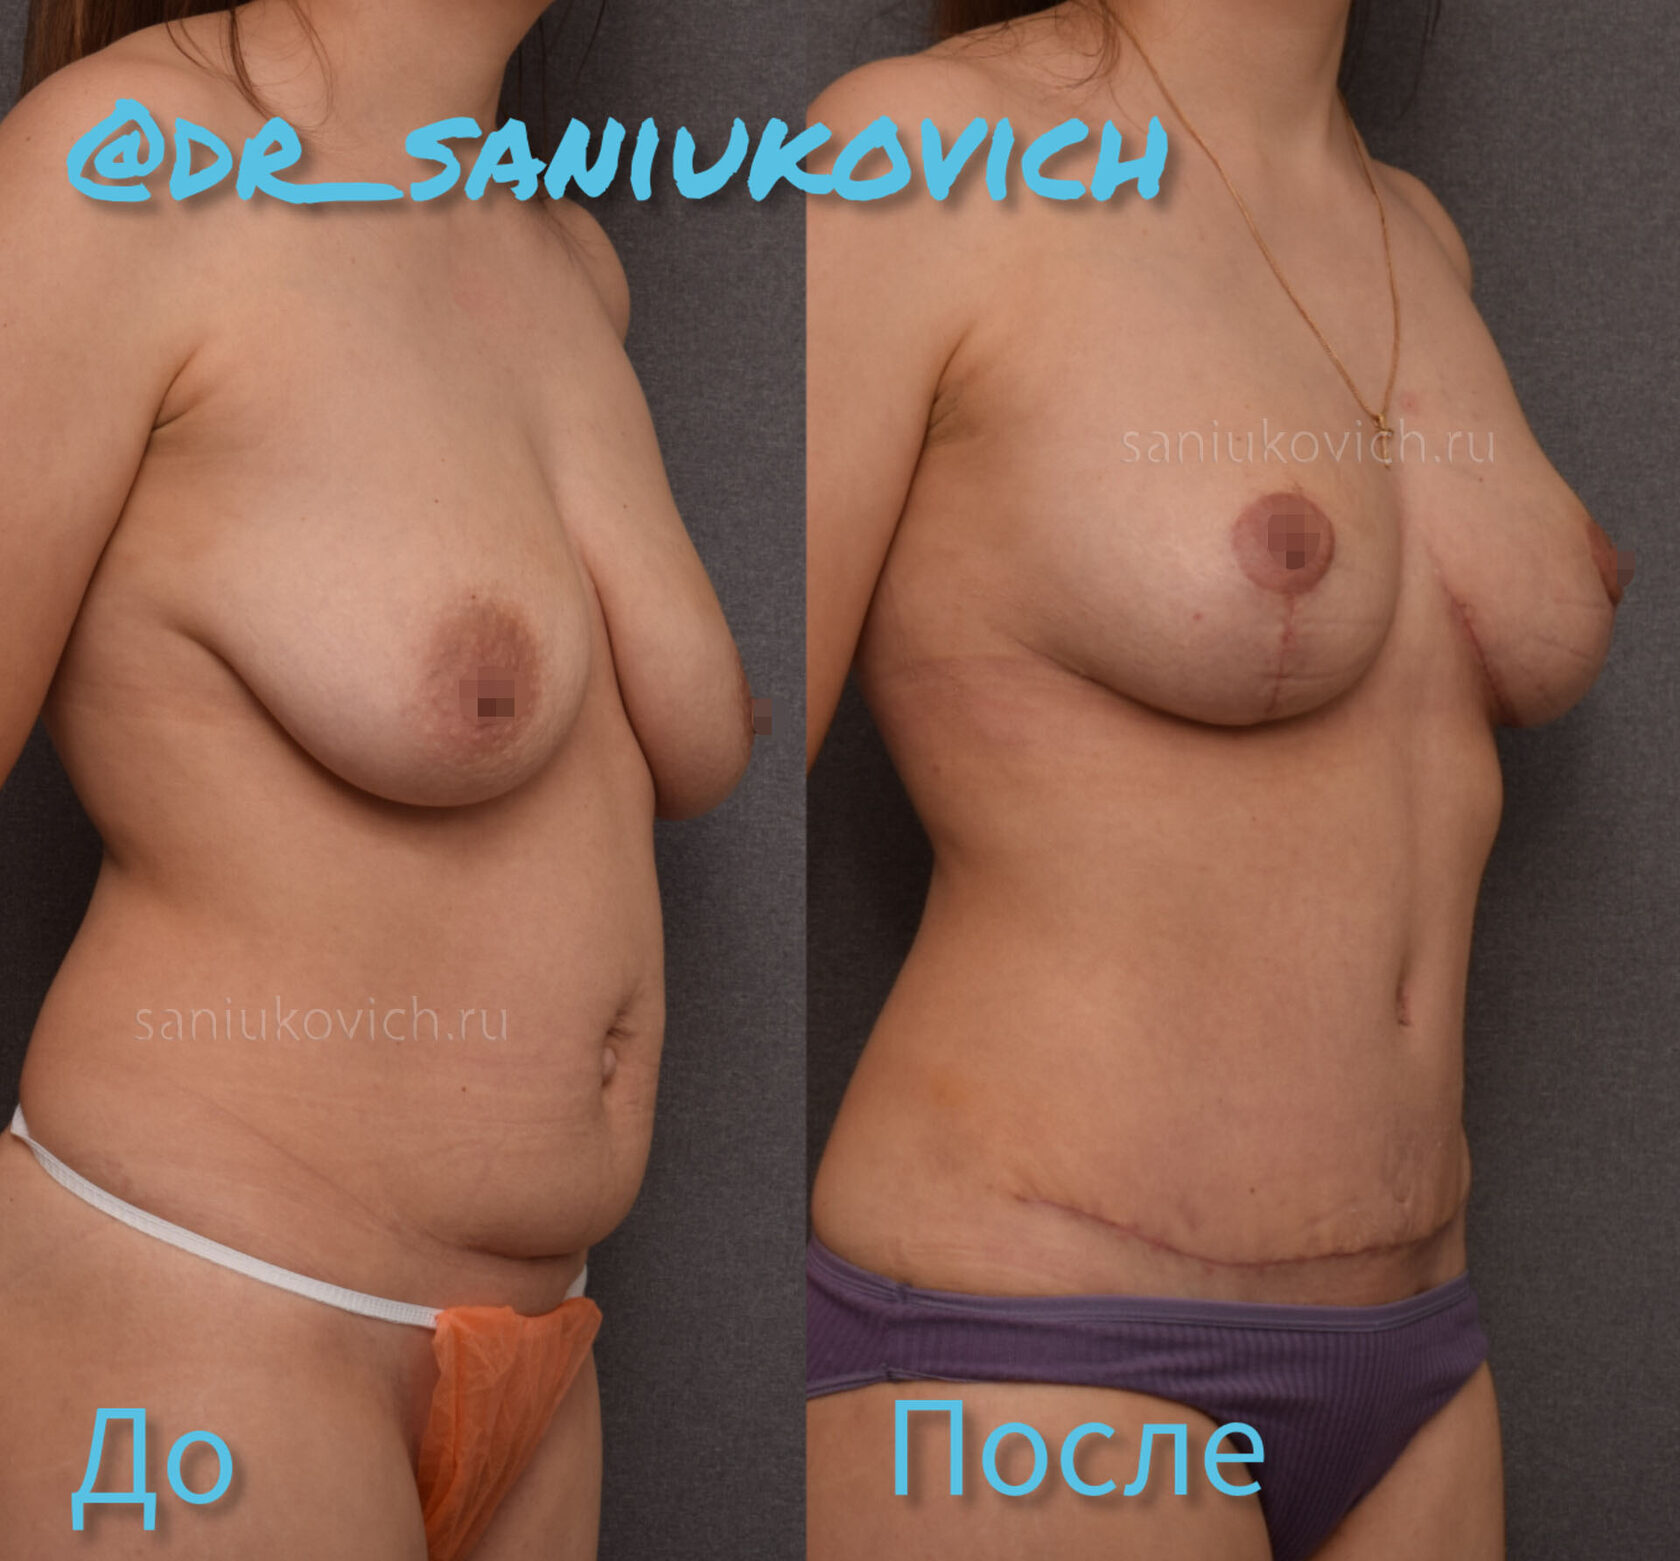 операция по подтяжке груди у женщин фото 6